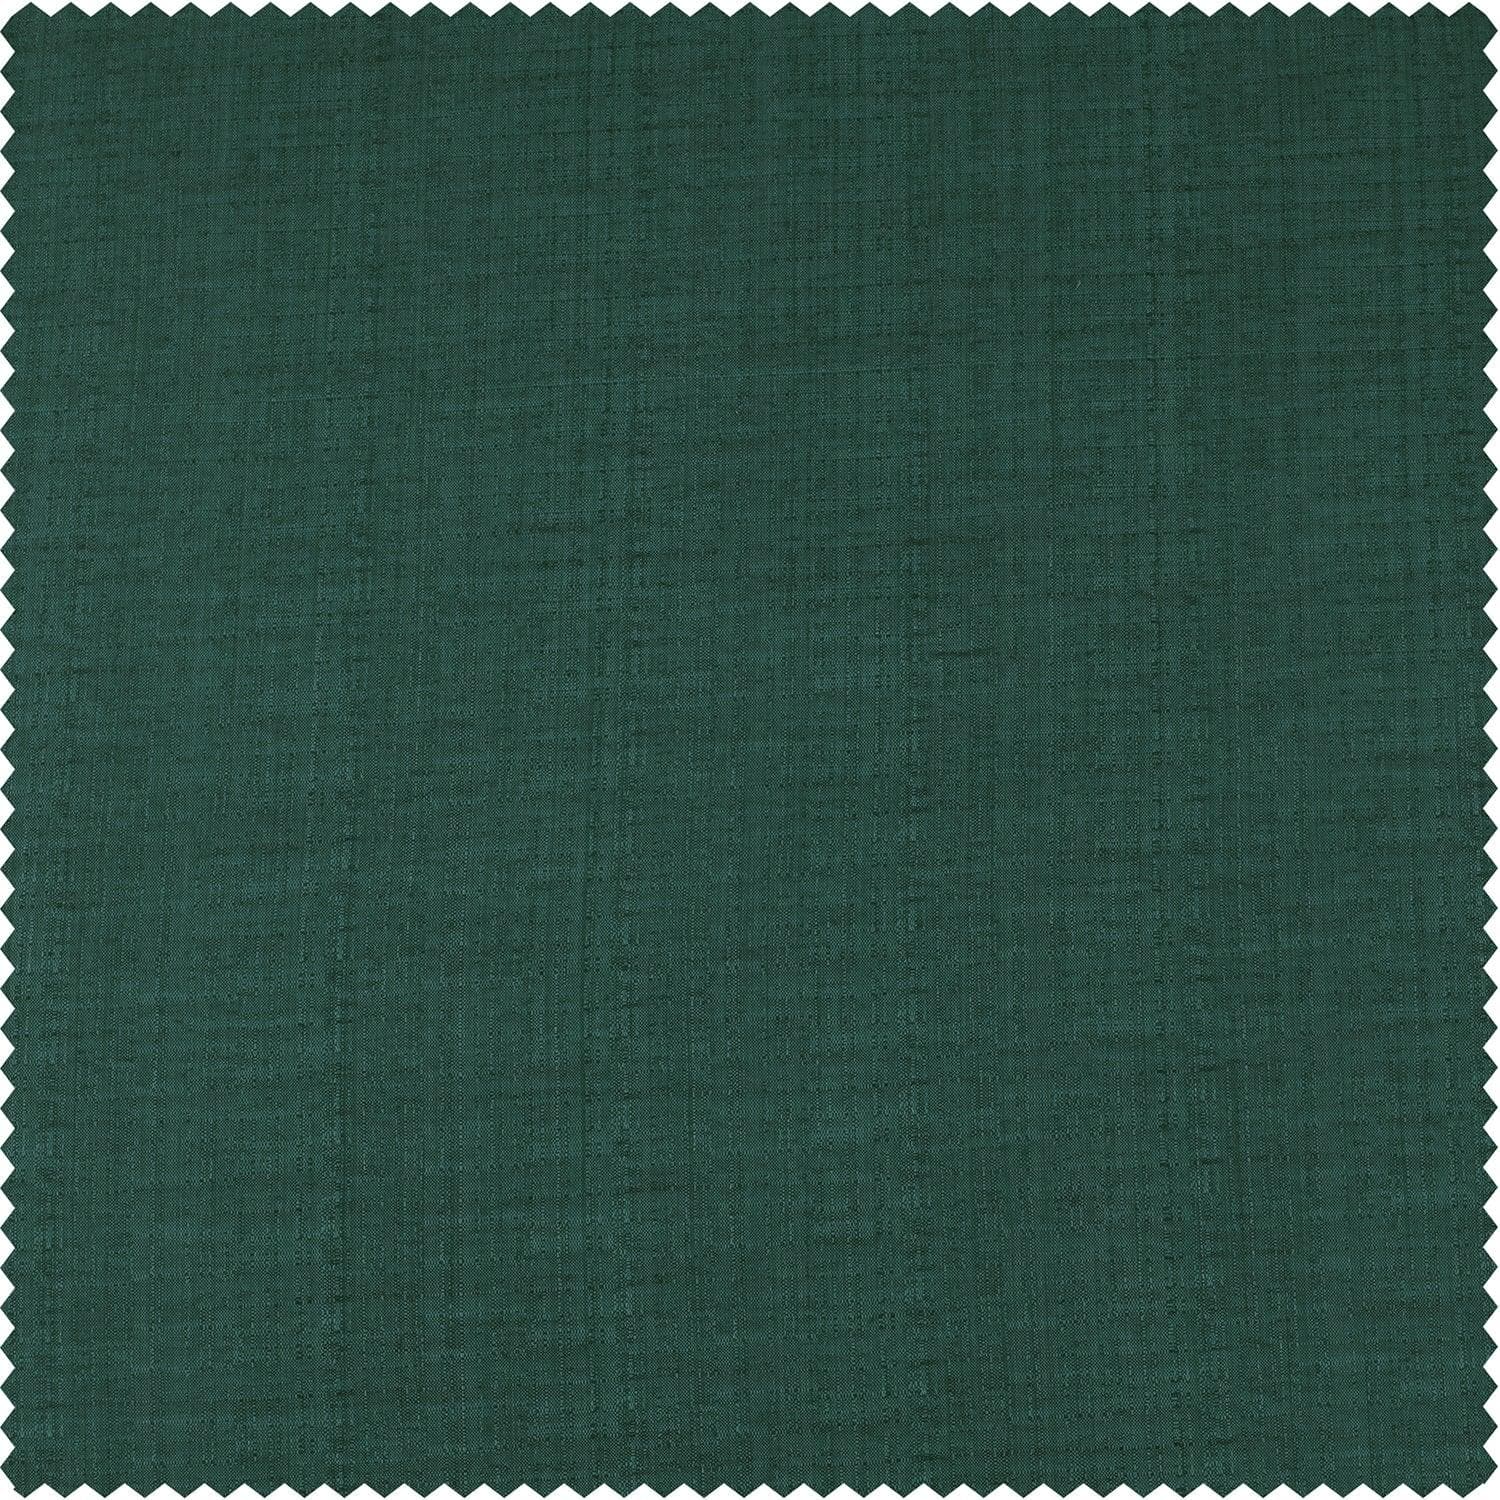 Basil Green Designer Shantung Faux Silk Cushion Covers - Pair